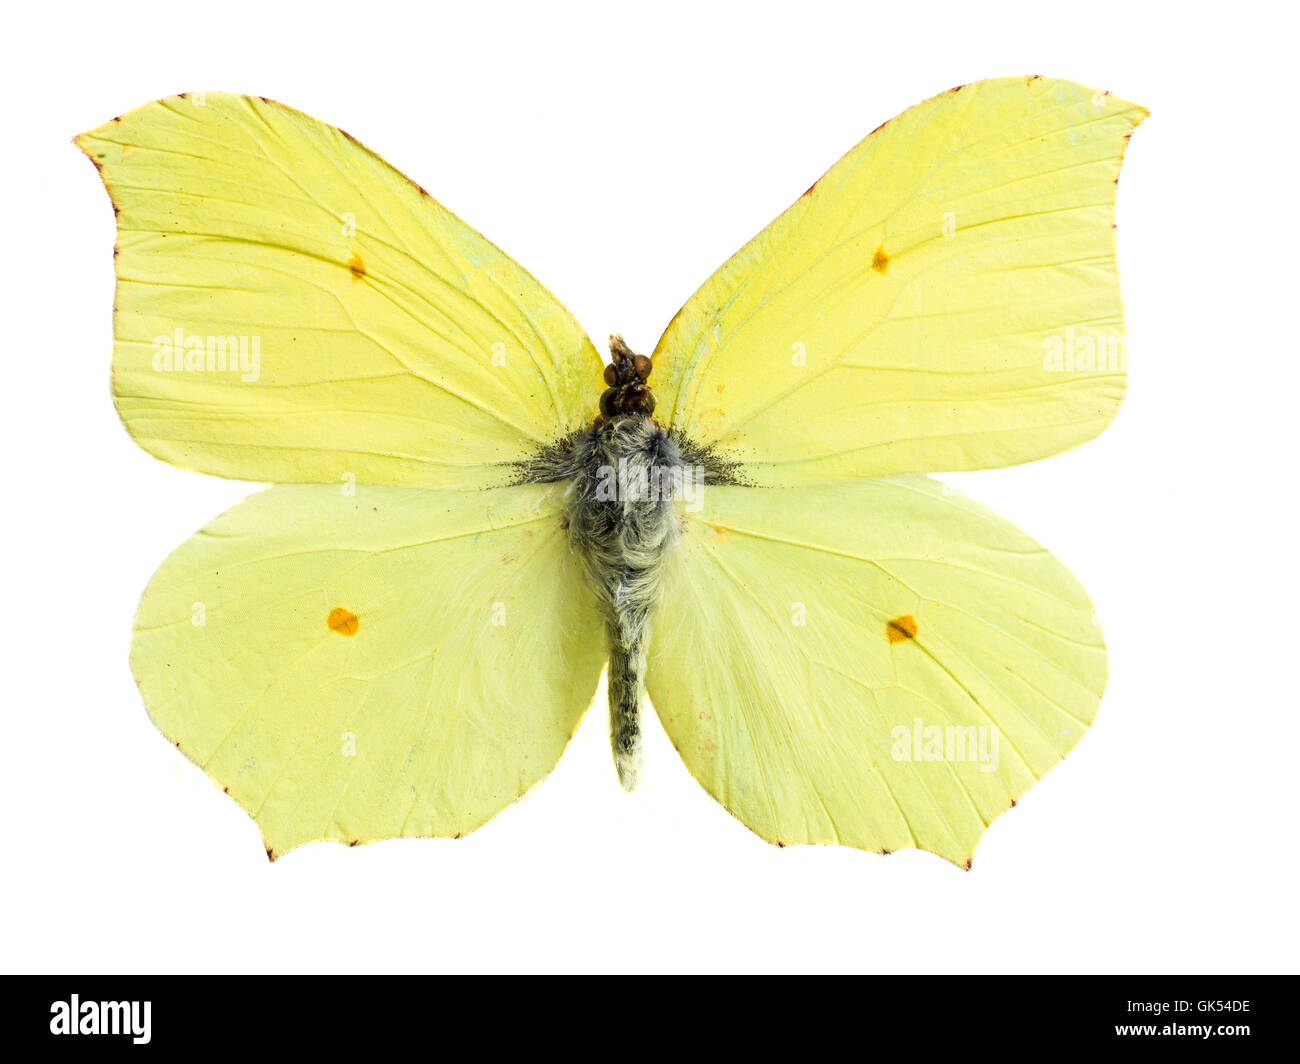 Бабочка лимонница рисунок. Бабочка лимонница крушинница. Бабочка капустница желтая. Бабочки на белом фоне. Бабочка лимонница на белом фоне.